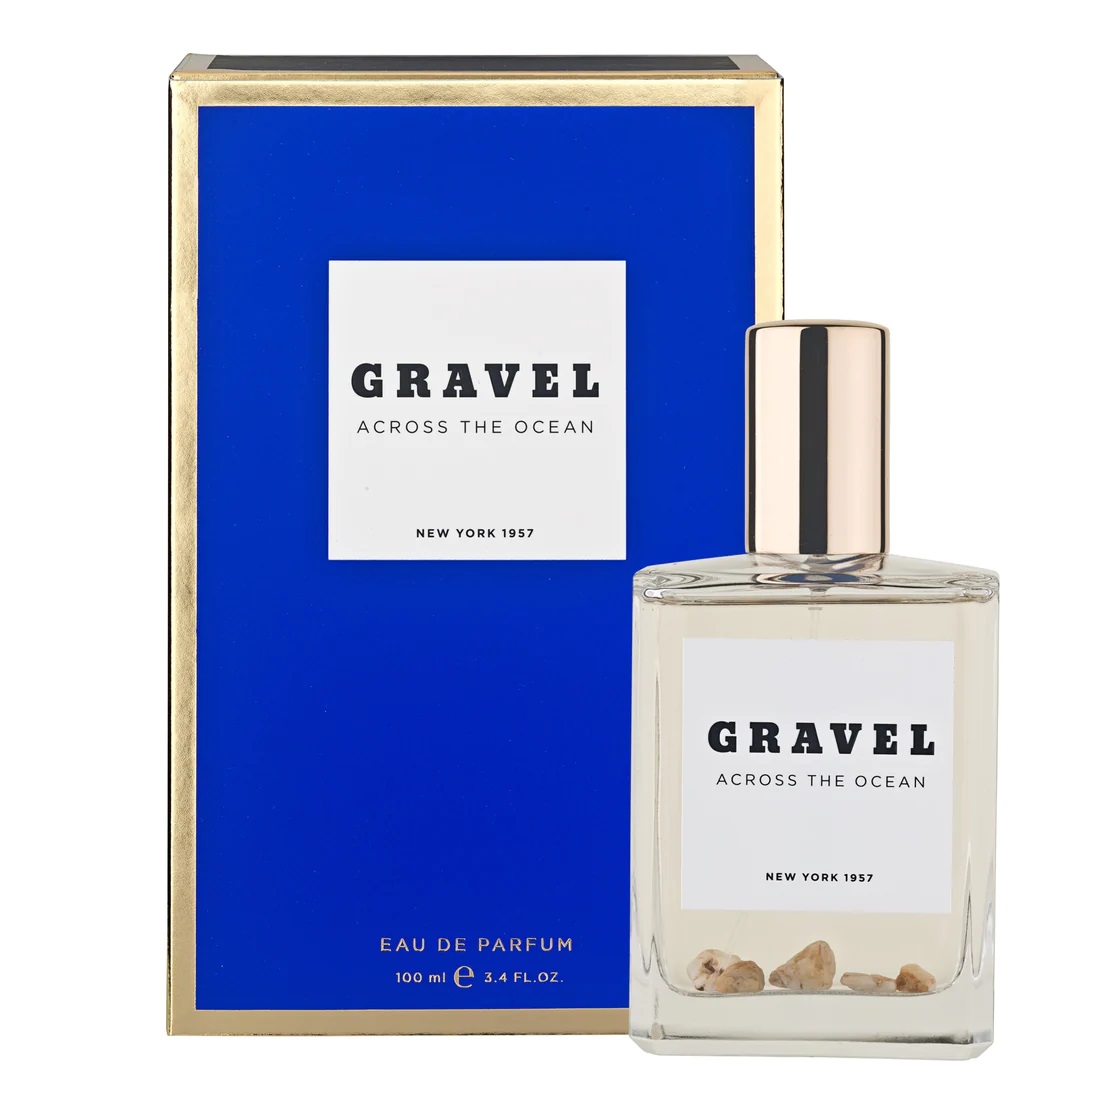 GRAVEL Across the Ocean Eau de Parfum